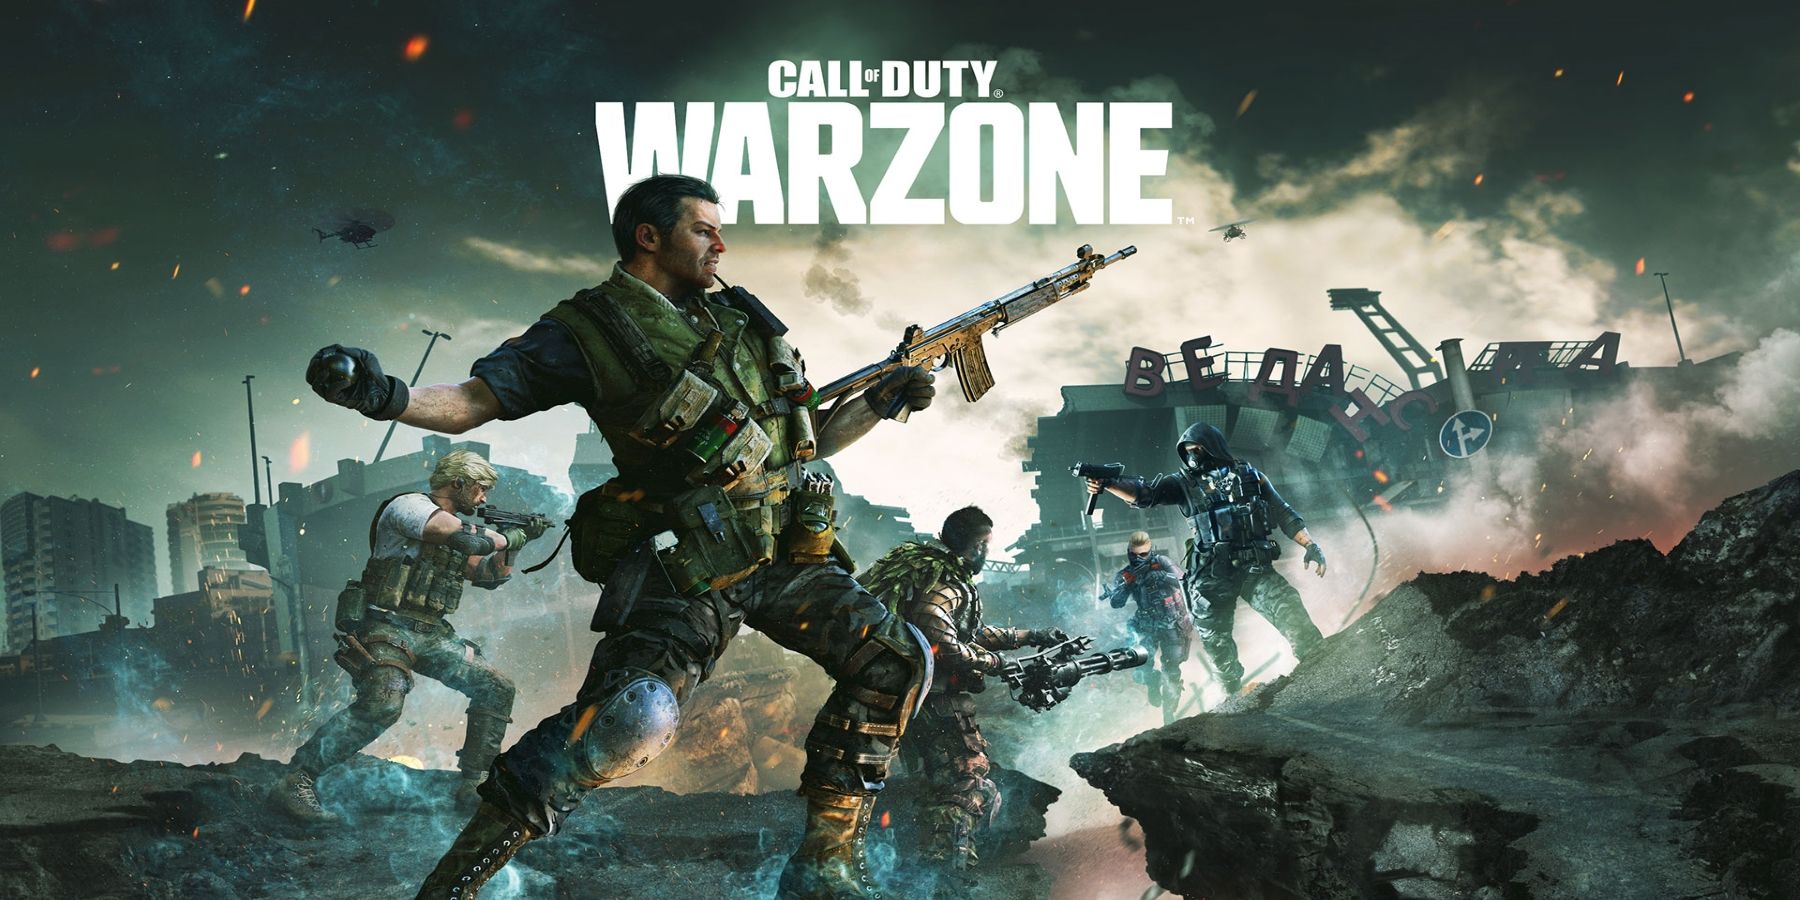 A Call of Duty: Warzone visszahozza az eredeti Gulagot és hozzáadja a 2. világháborús bunkereket